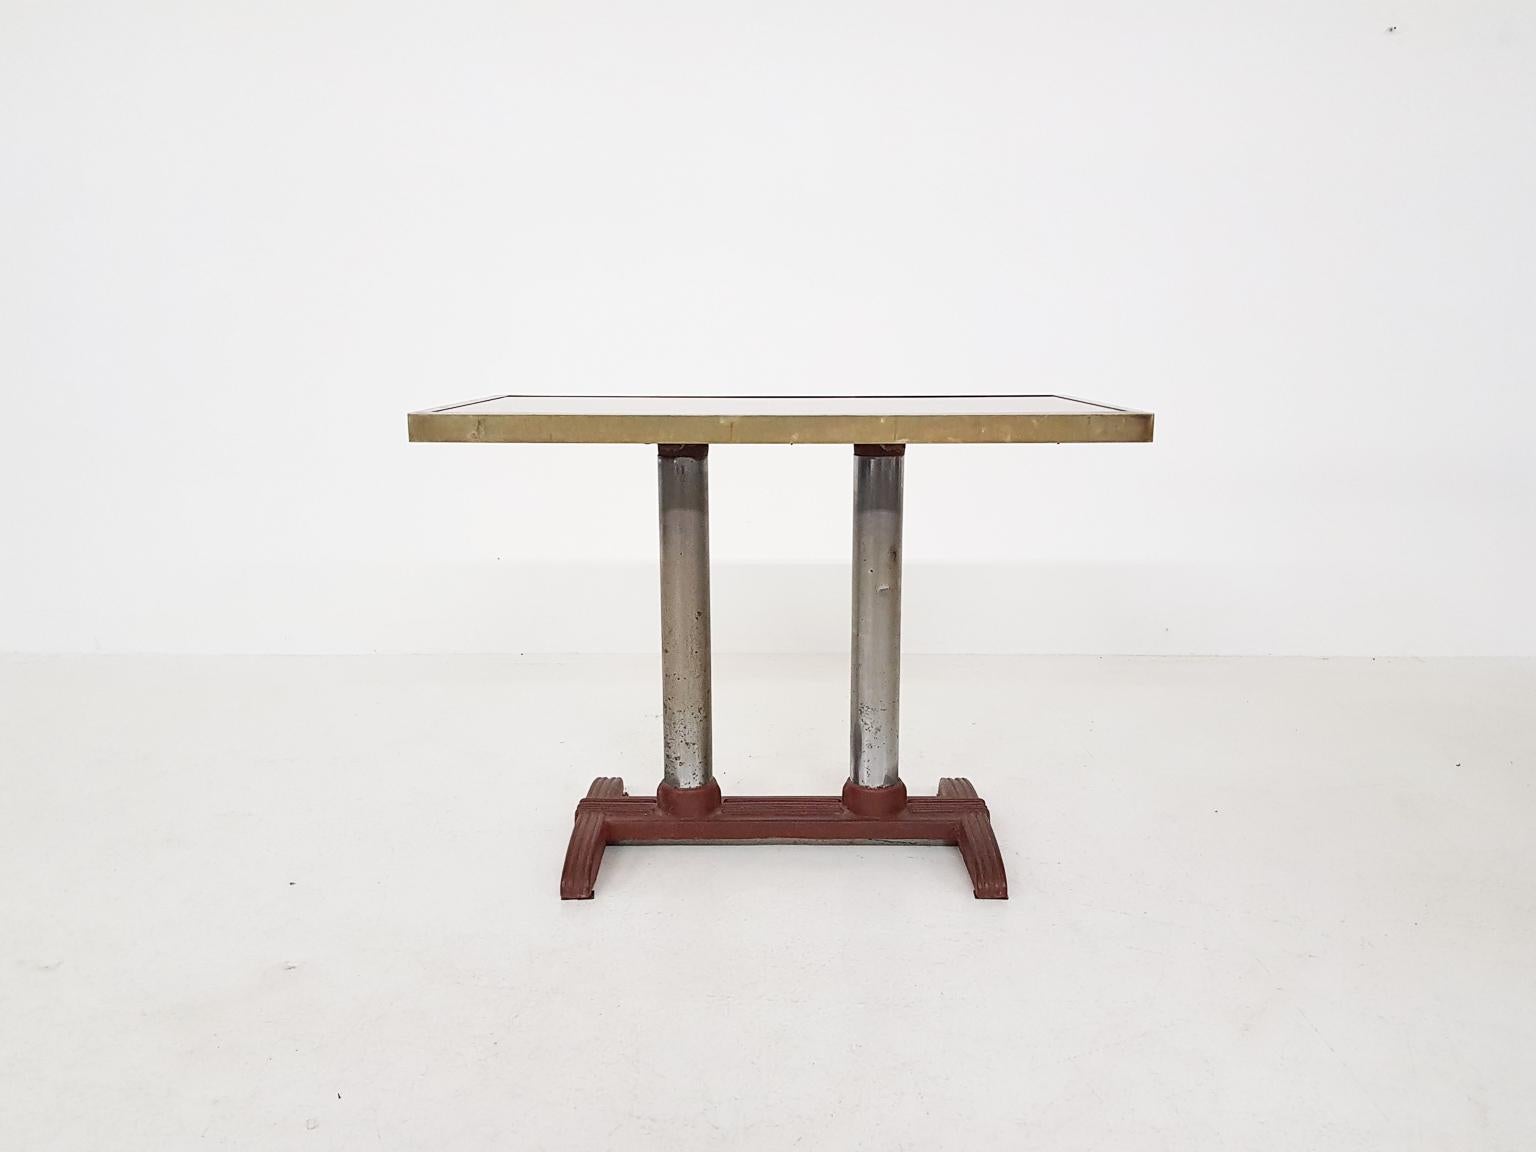 Table très lourde qui peut être utilisée comme table d'appoint, console ou table de jardin. Mais vous pouvez aussi placer une chaise devant pour l'utiliser comme un petit bureau. Fabriqué entre 1900 et 1930.

Cette table se trouvait dans une